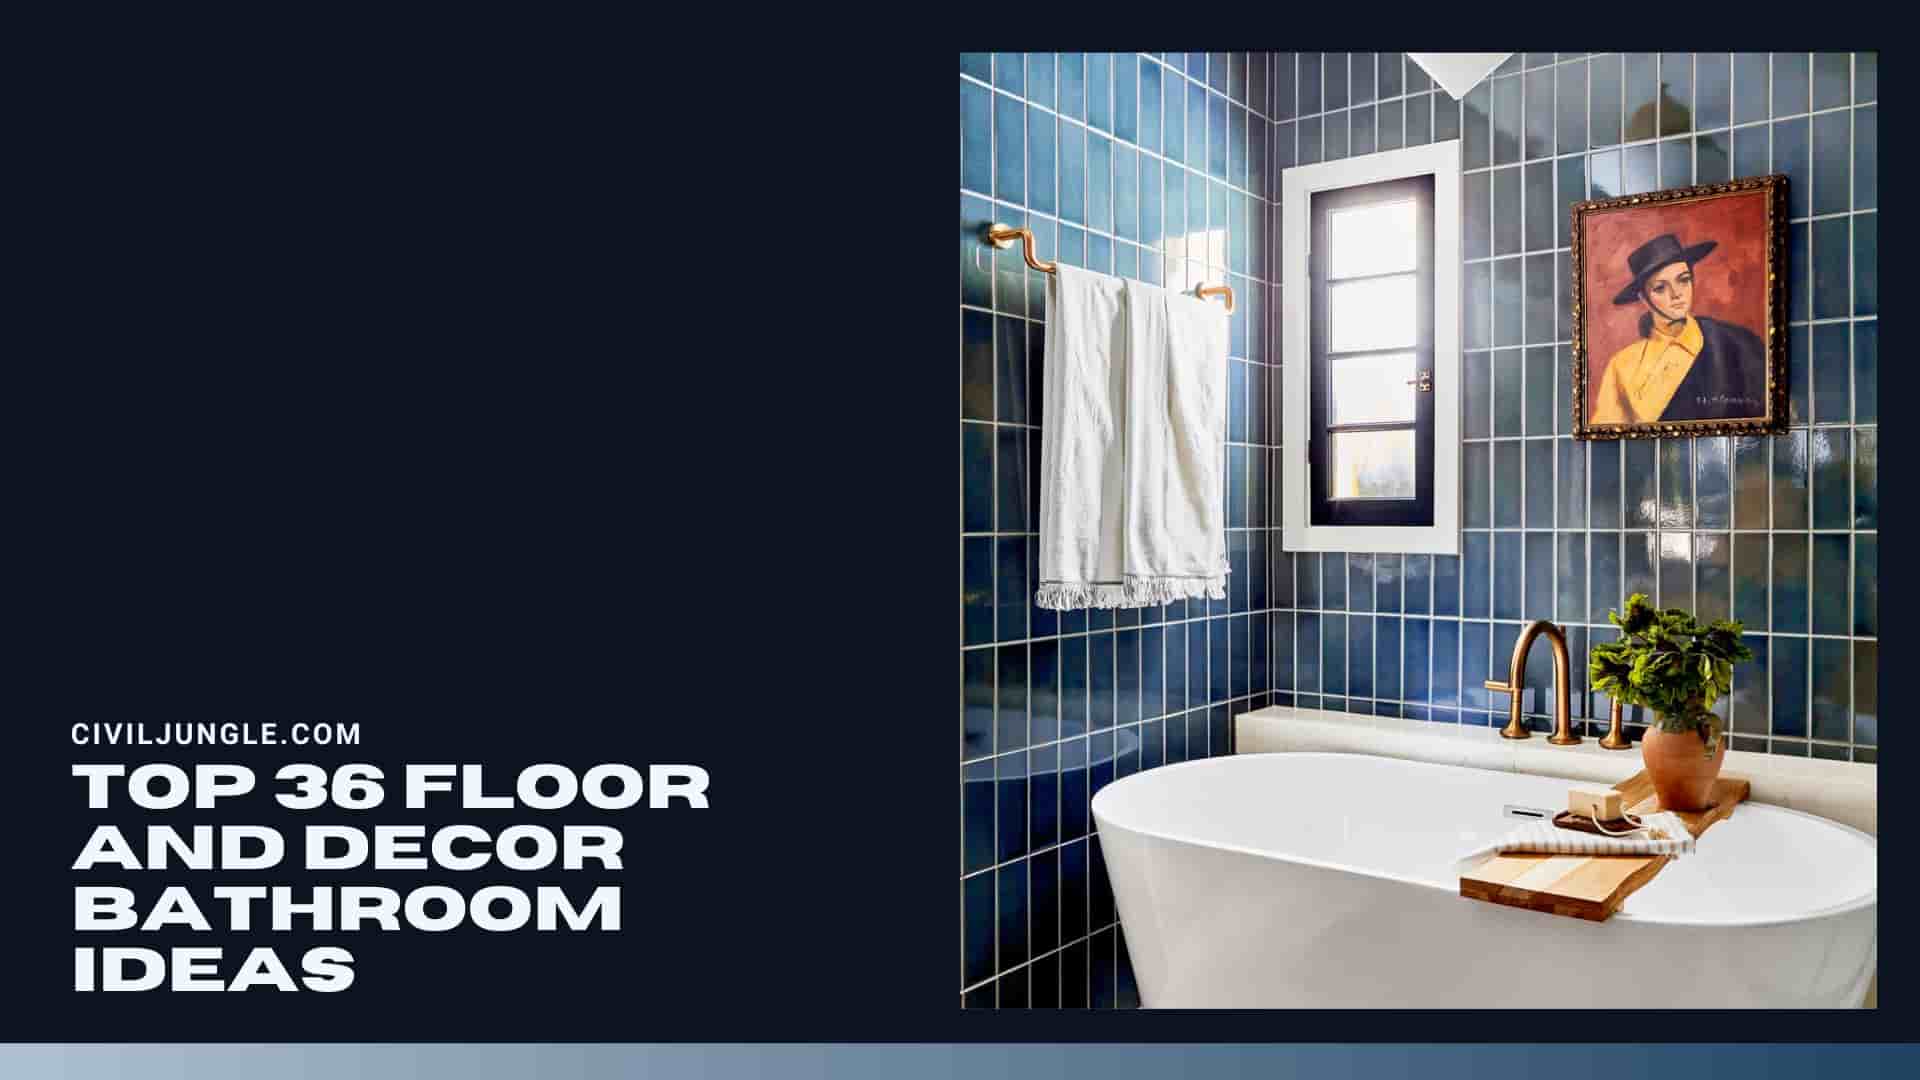 Top 36 Floor and Decor Bathroom Ideas